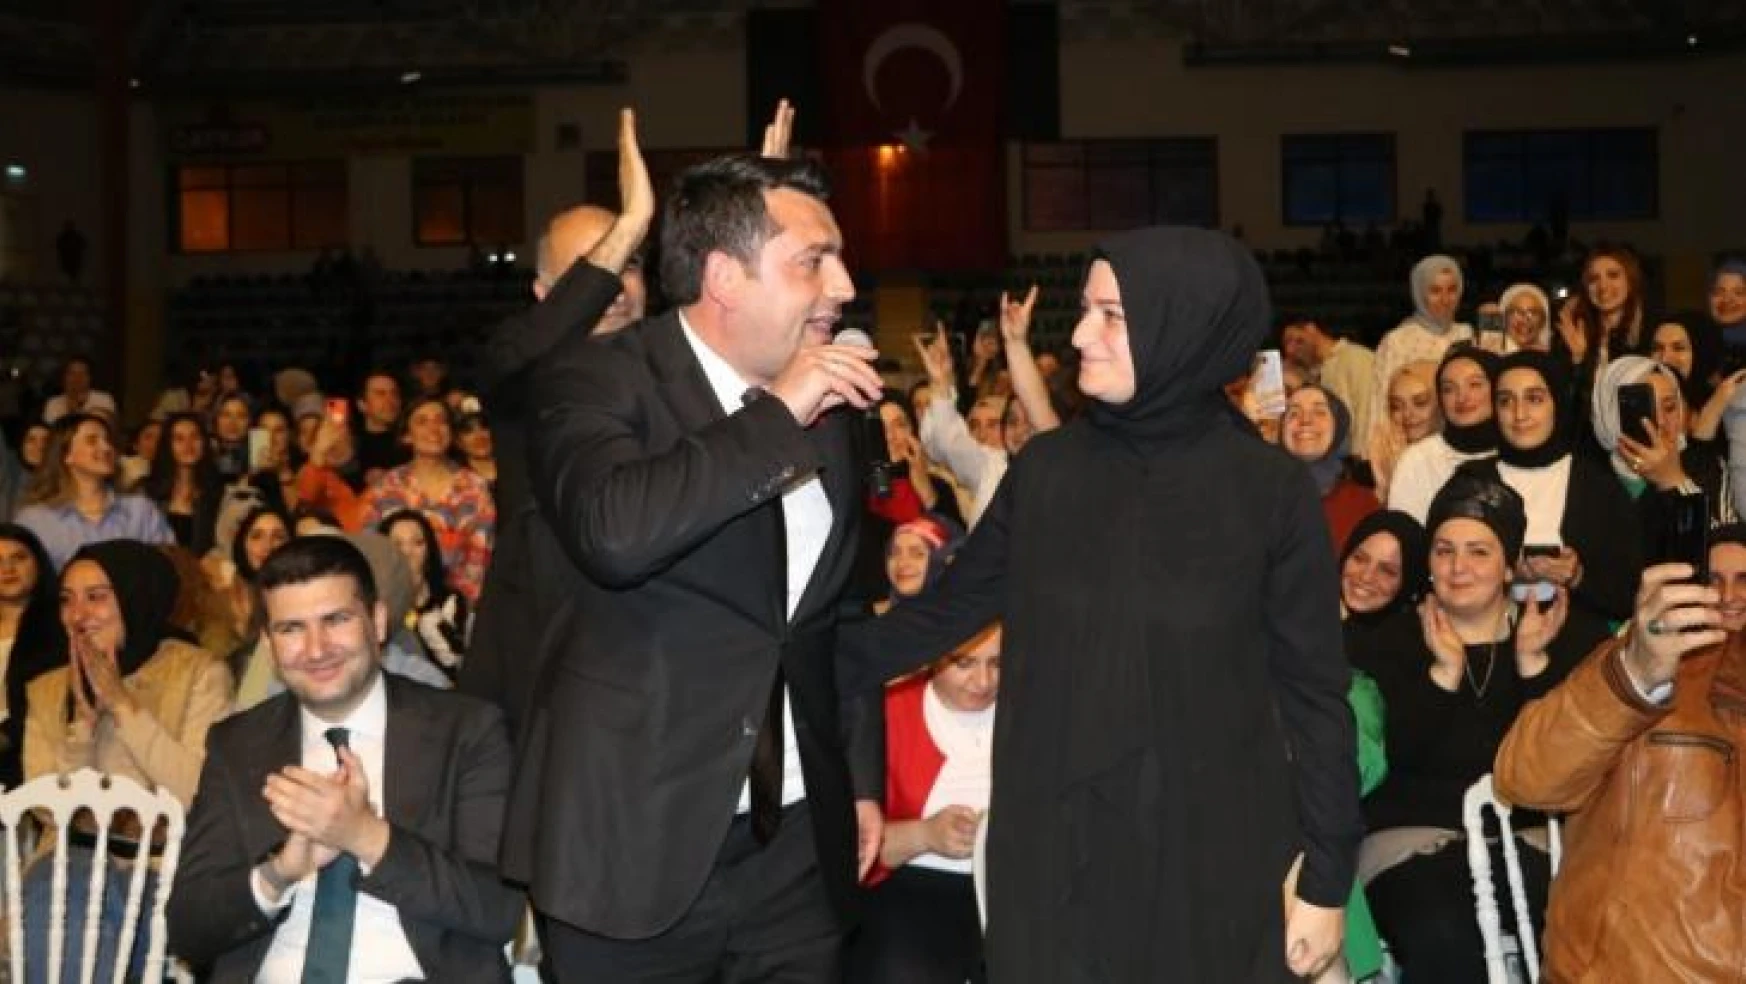 MHP İl Başkanı mikrofonu aldı, eşine şarkı söyledi